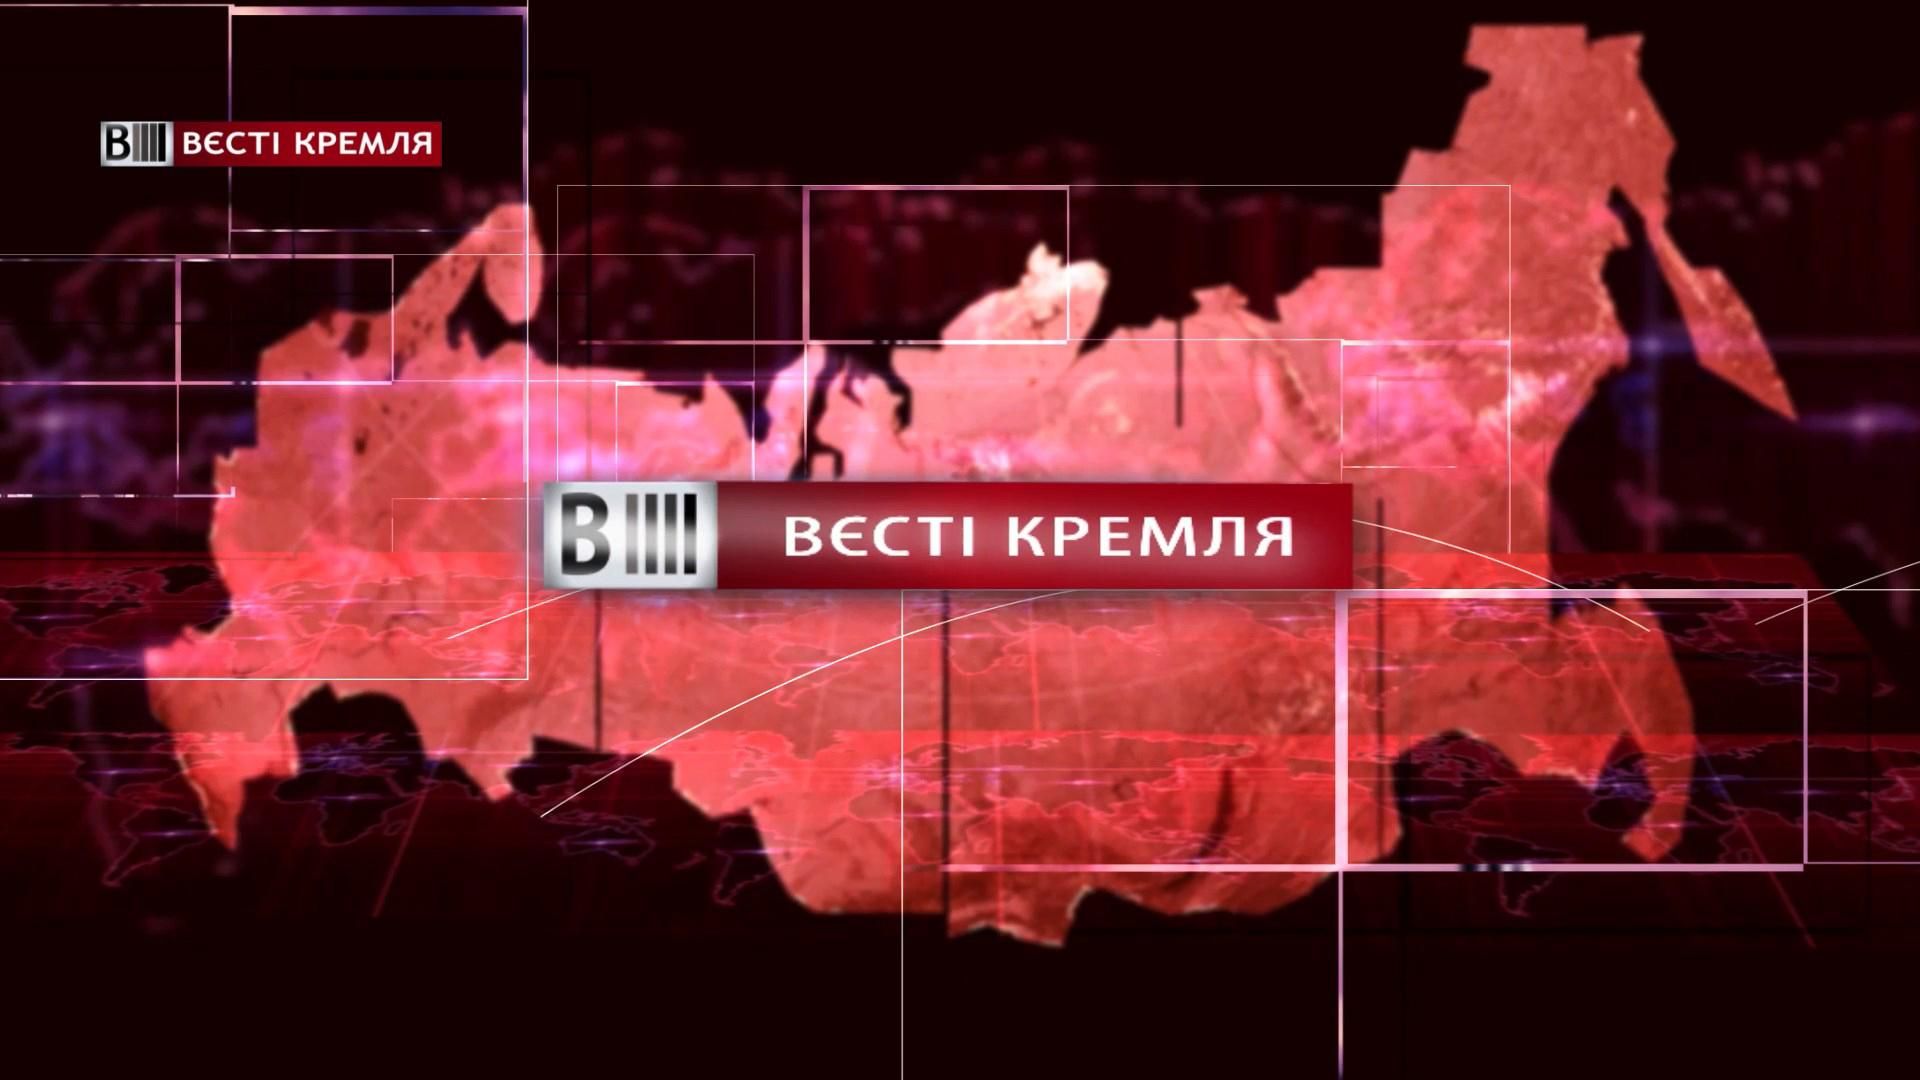 Дивіться "Вєсті Кремля". Бойове мистецтво Путіна. Отруєння Скрипаля "новачком"